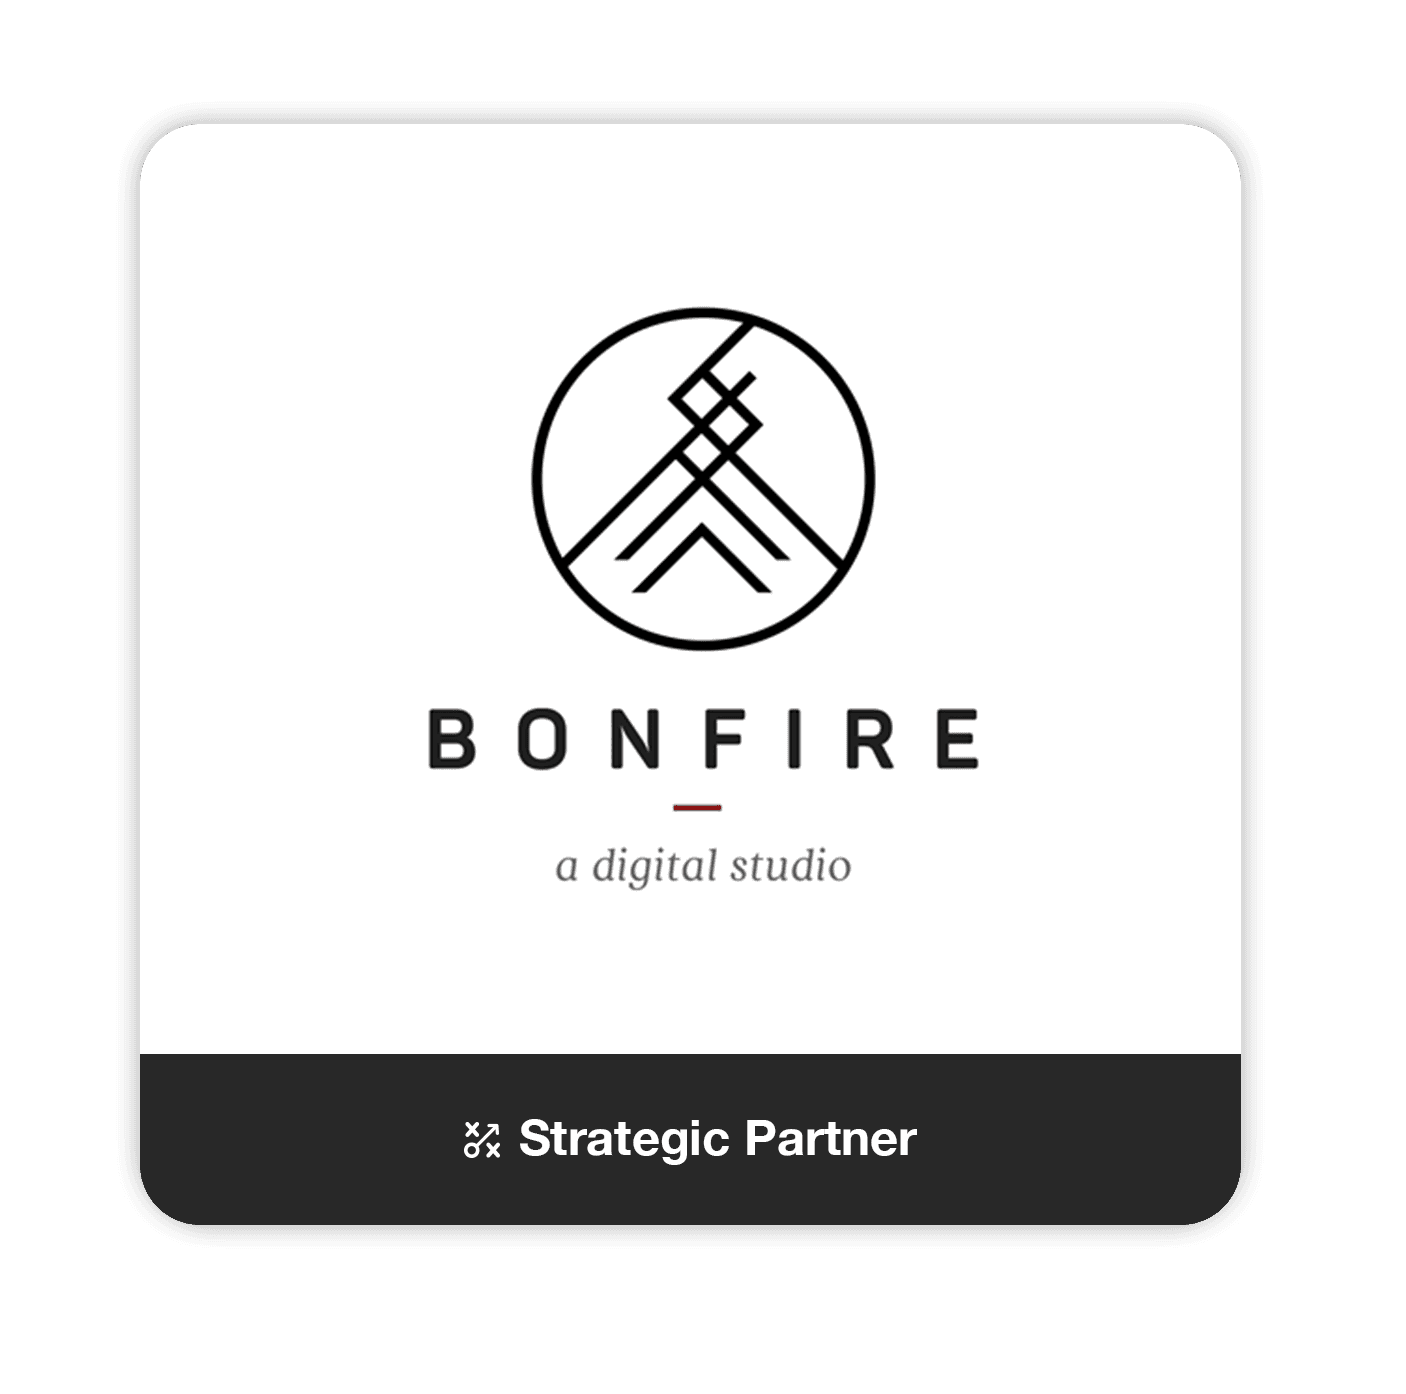 Bonfiredetails